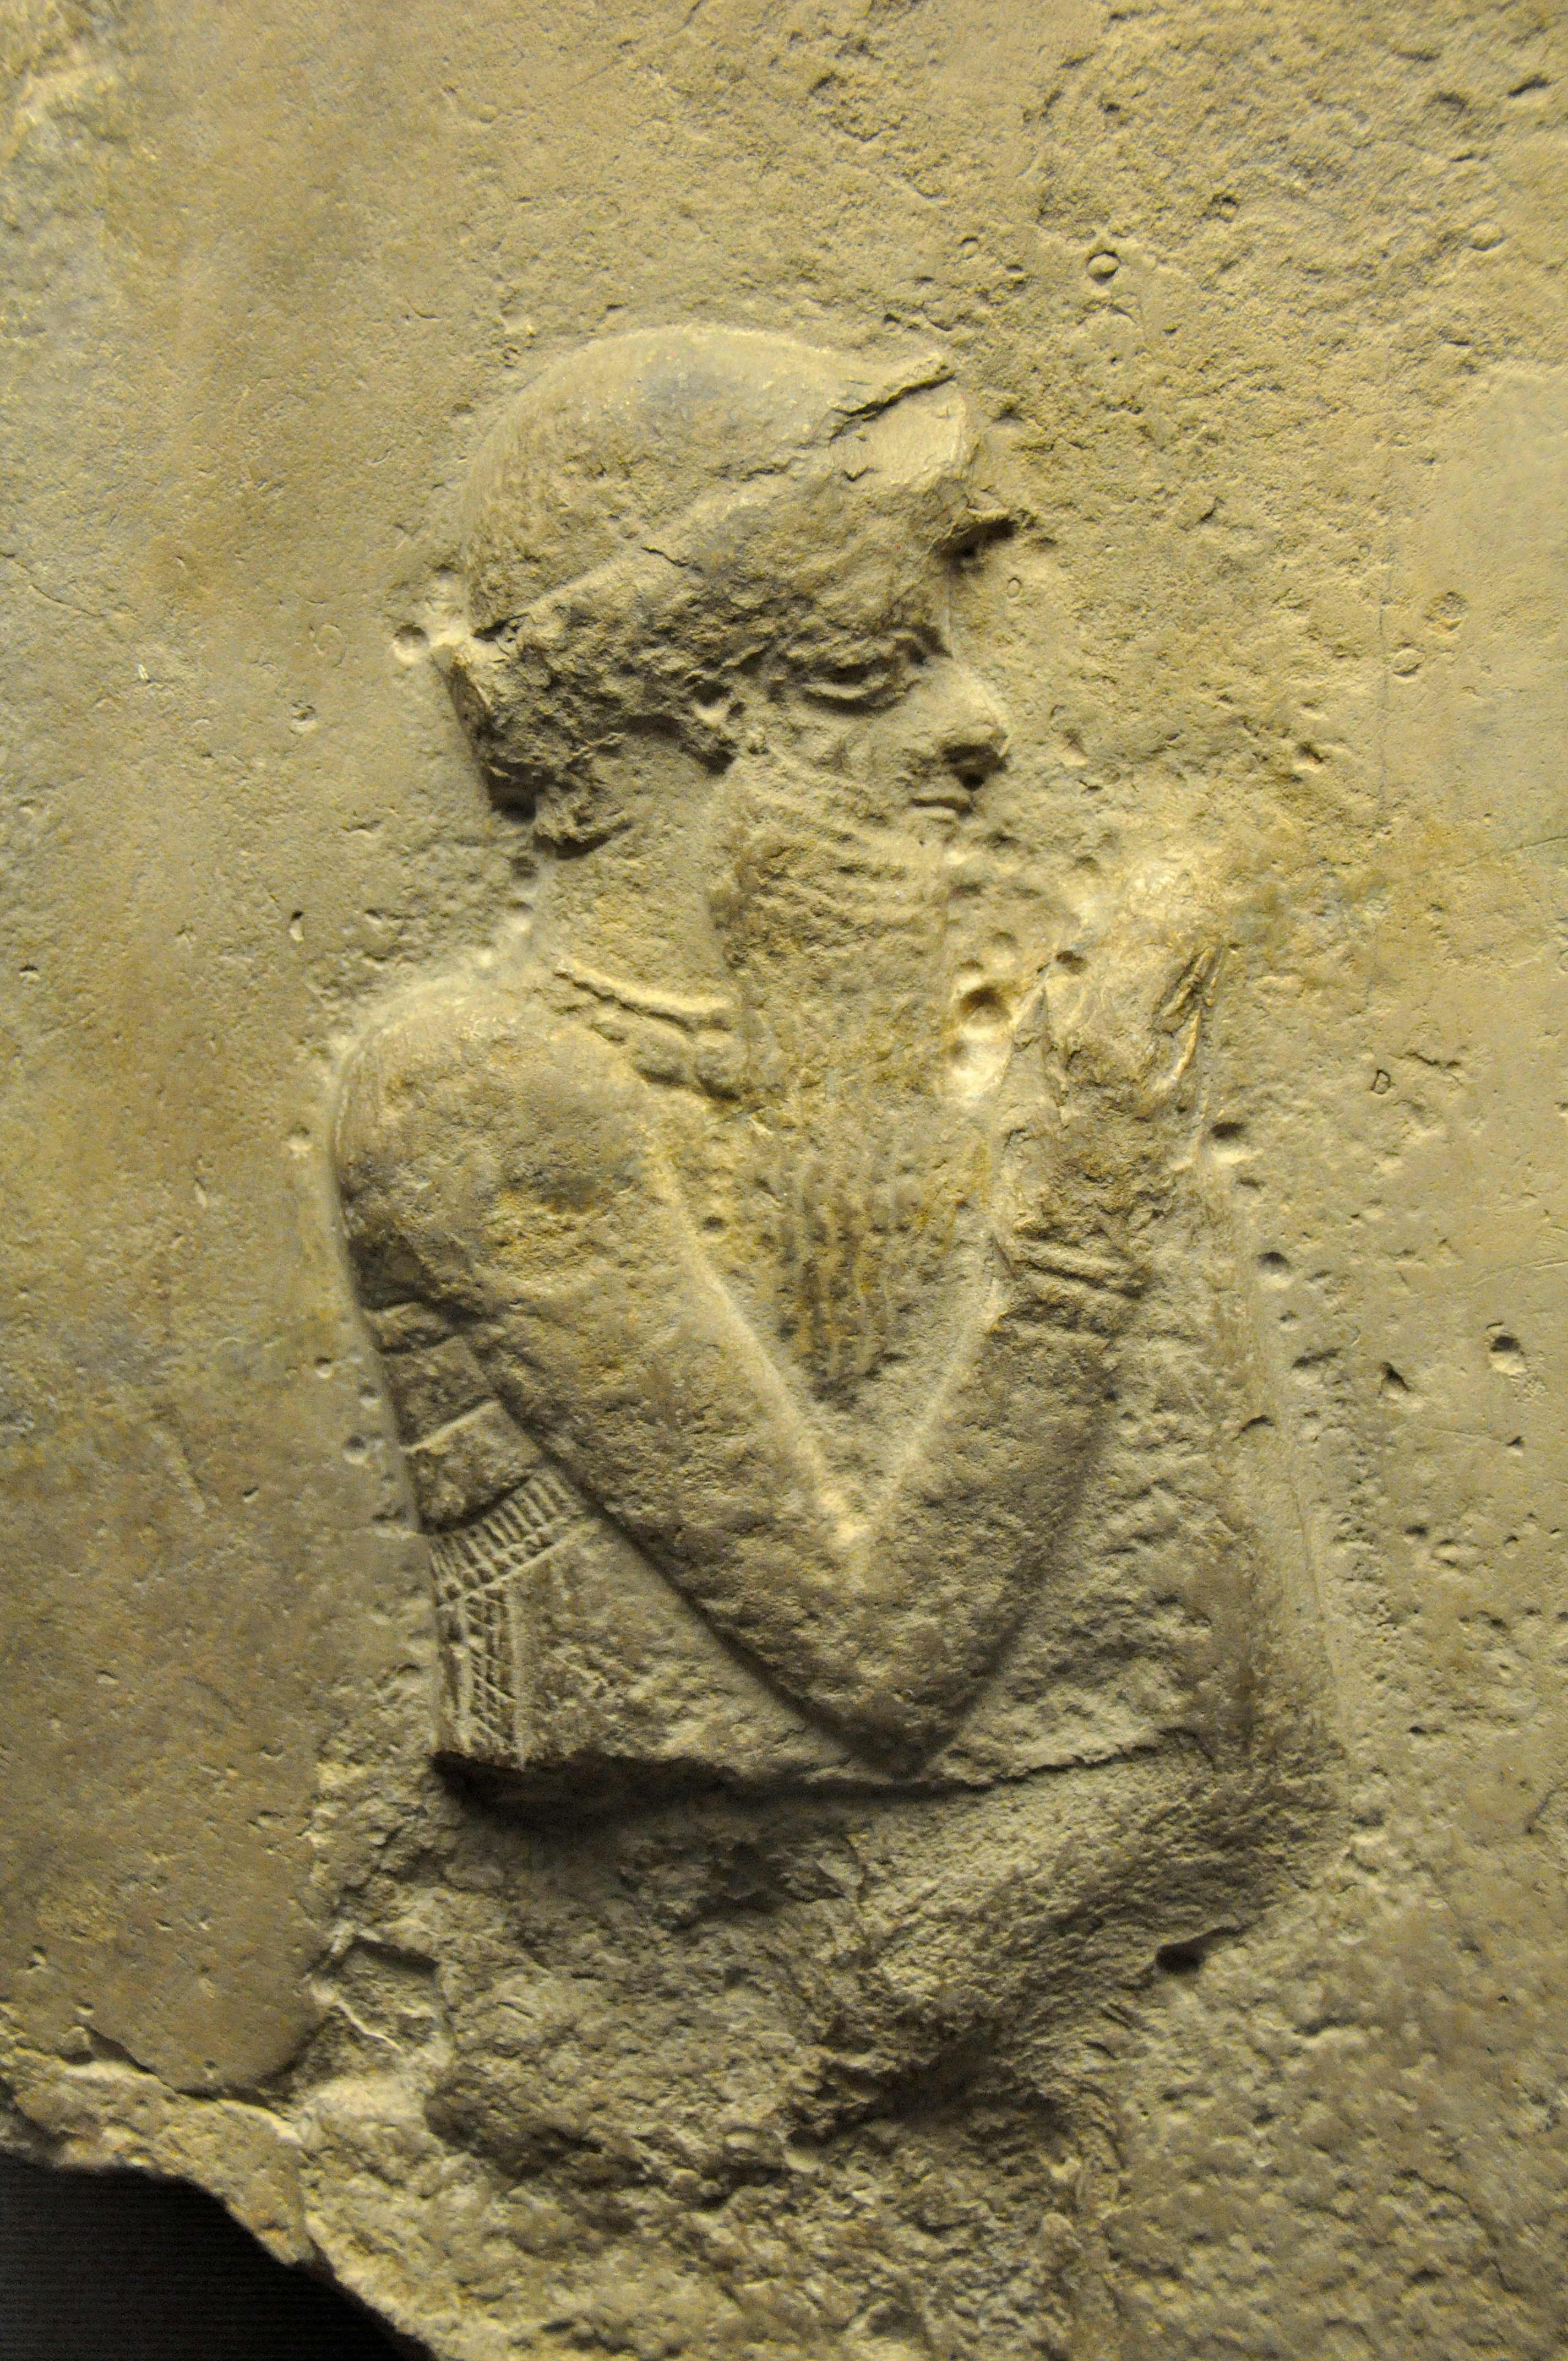 上图：巴比伦帝国第一任国王汉谟拉比（Hammurabi）像（主前1792-1750年作品，出土于伊拉克Sippar，现藏于大英博物馆）。汉谟拉比以制定了《汉谟拉比法典》而闻名于史。《汉谟拉比法典》是历史上最早的成文民法典之一，其中第132条规定，如果一个人的妻子被人背后说闲话，但并没有被抓到与别的男人行淫，这位妻子就应当为她的丈夫跳到河里，以证明自己的清白。换句话说，这位妻子可能会因为谣言而被淹死。在古代中东的其他「神明裁判」法典中，通常是假定被告有罪，把被告暴露在水、火、毒药等危机环境中，如果神明插手保护被告，就证明被告清白。而《民数记》中「疑恨的条例」却并不假定妻子有罪，也不把妻子放在危险的环境中，而是借着「疑恨的素祭」，让丈夫和妻子一起学习接受神的权柄。这在古代父权社会中是非常人道的。